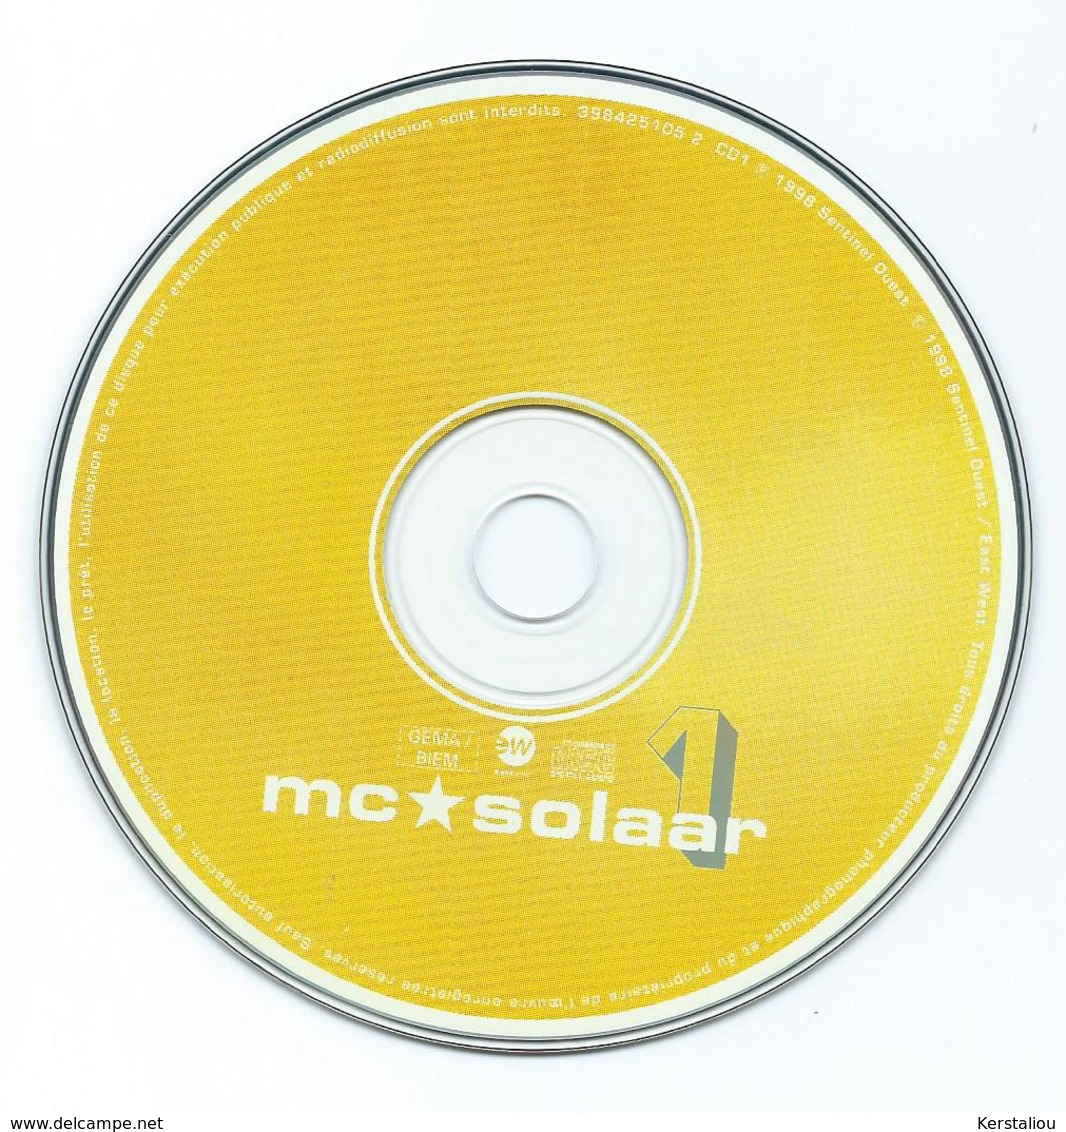 MC SOLAAR – "Prose combat" & "Le tour de la question" – Lot de 3CD – 1994/1998 – Made in France & Germany